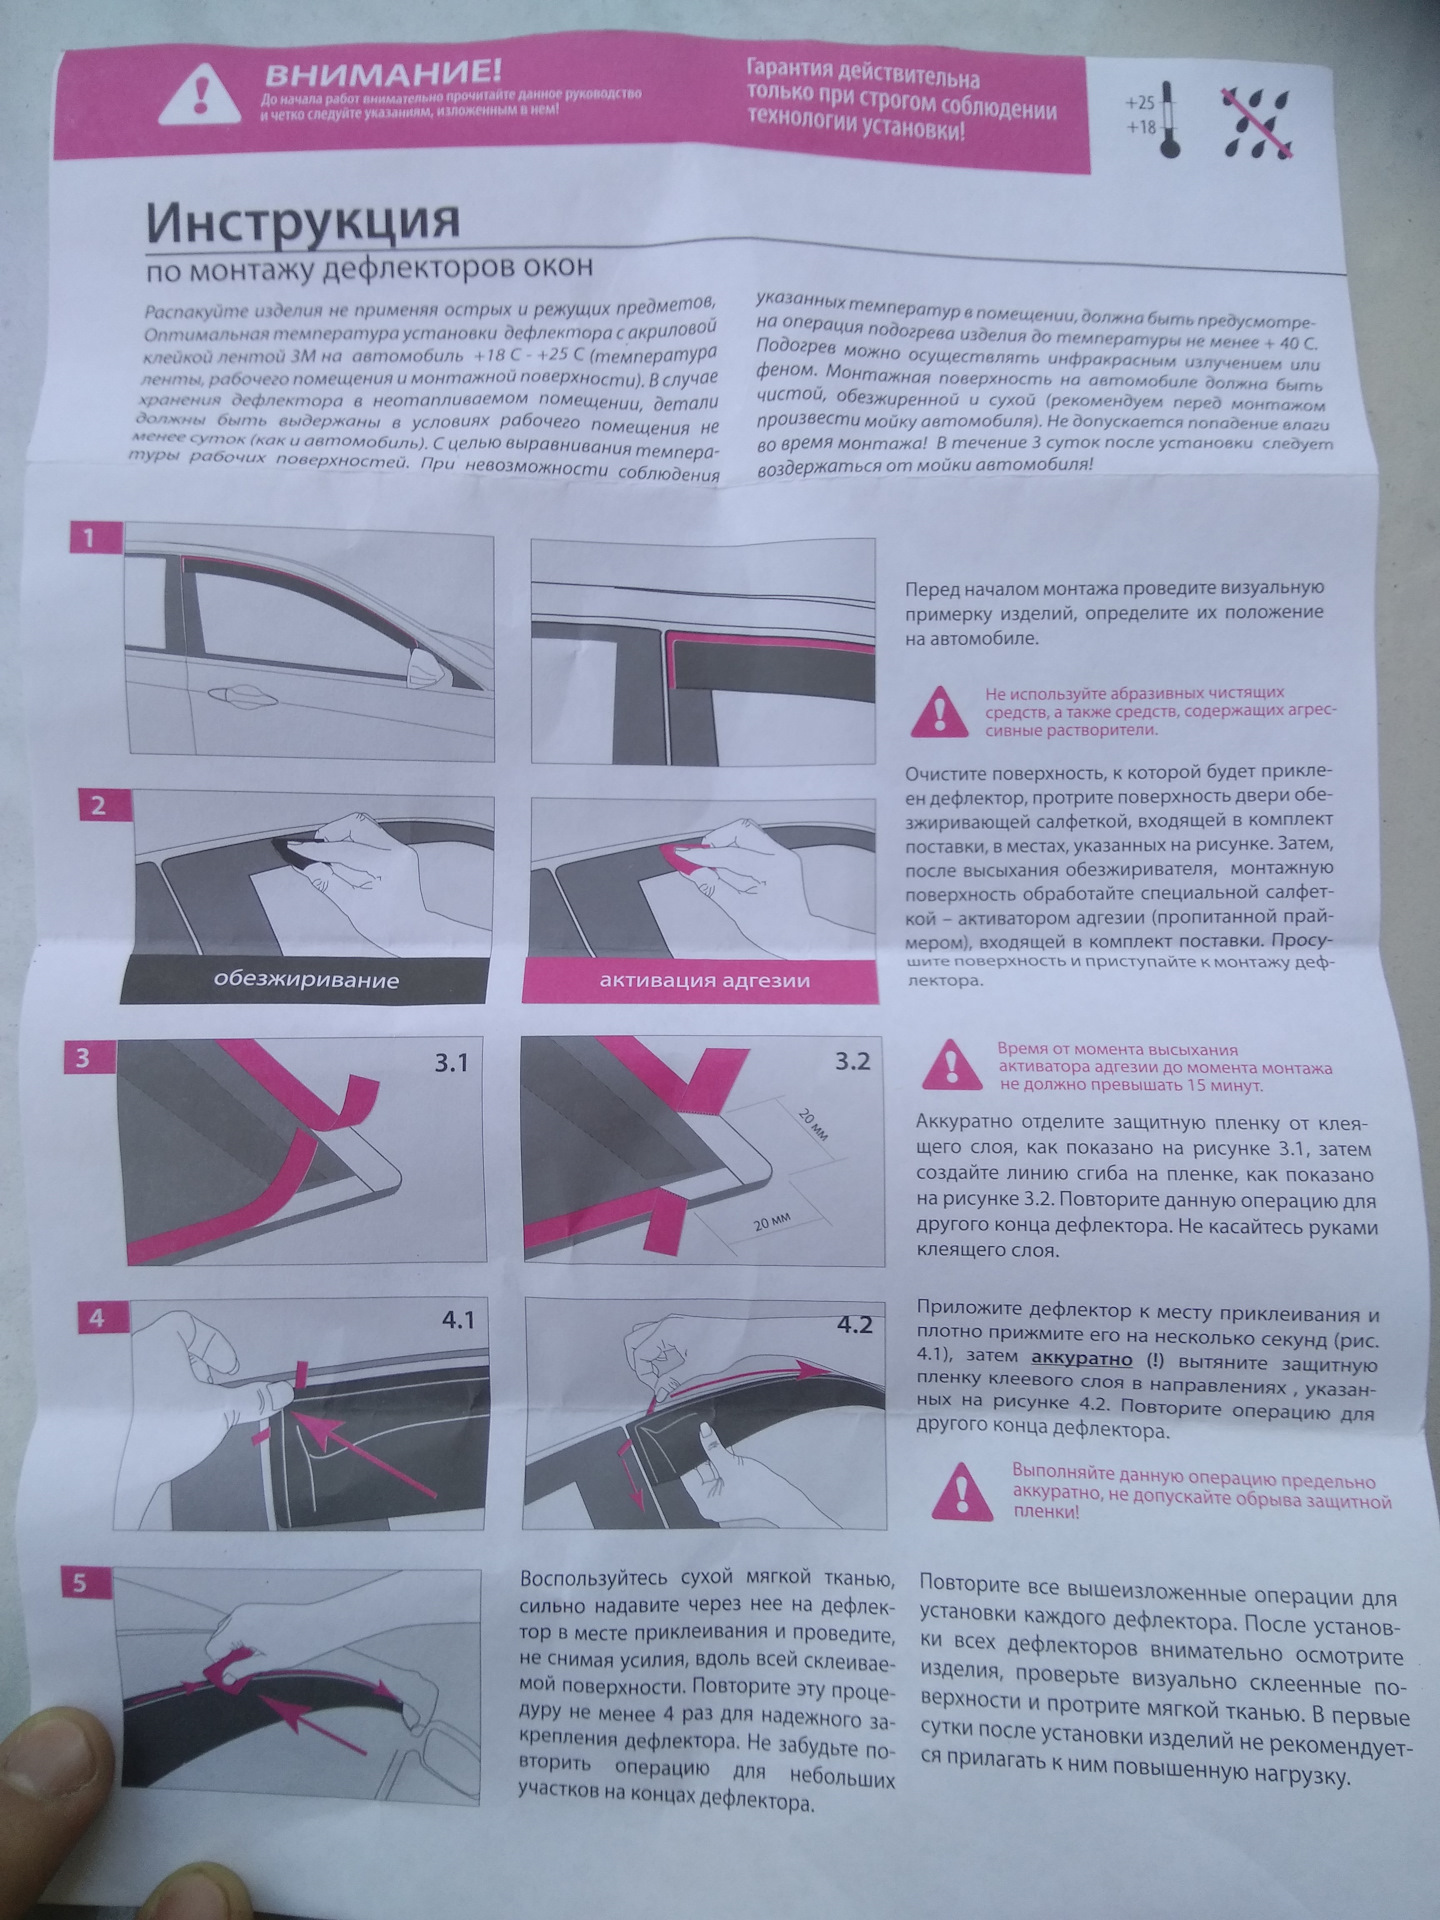 Пошаговая инструкция о том как и чем приклеить ветровик на дверь машины самостоятельно